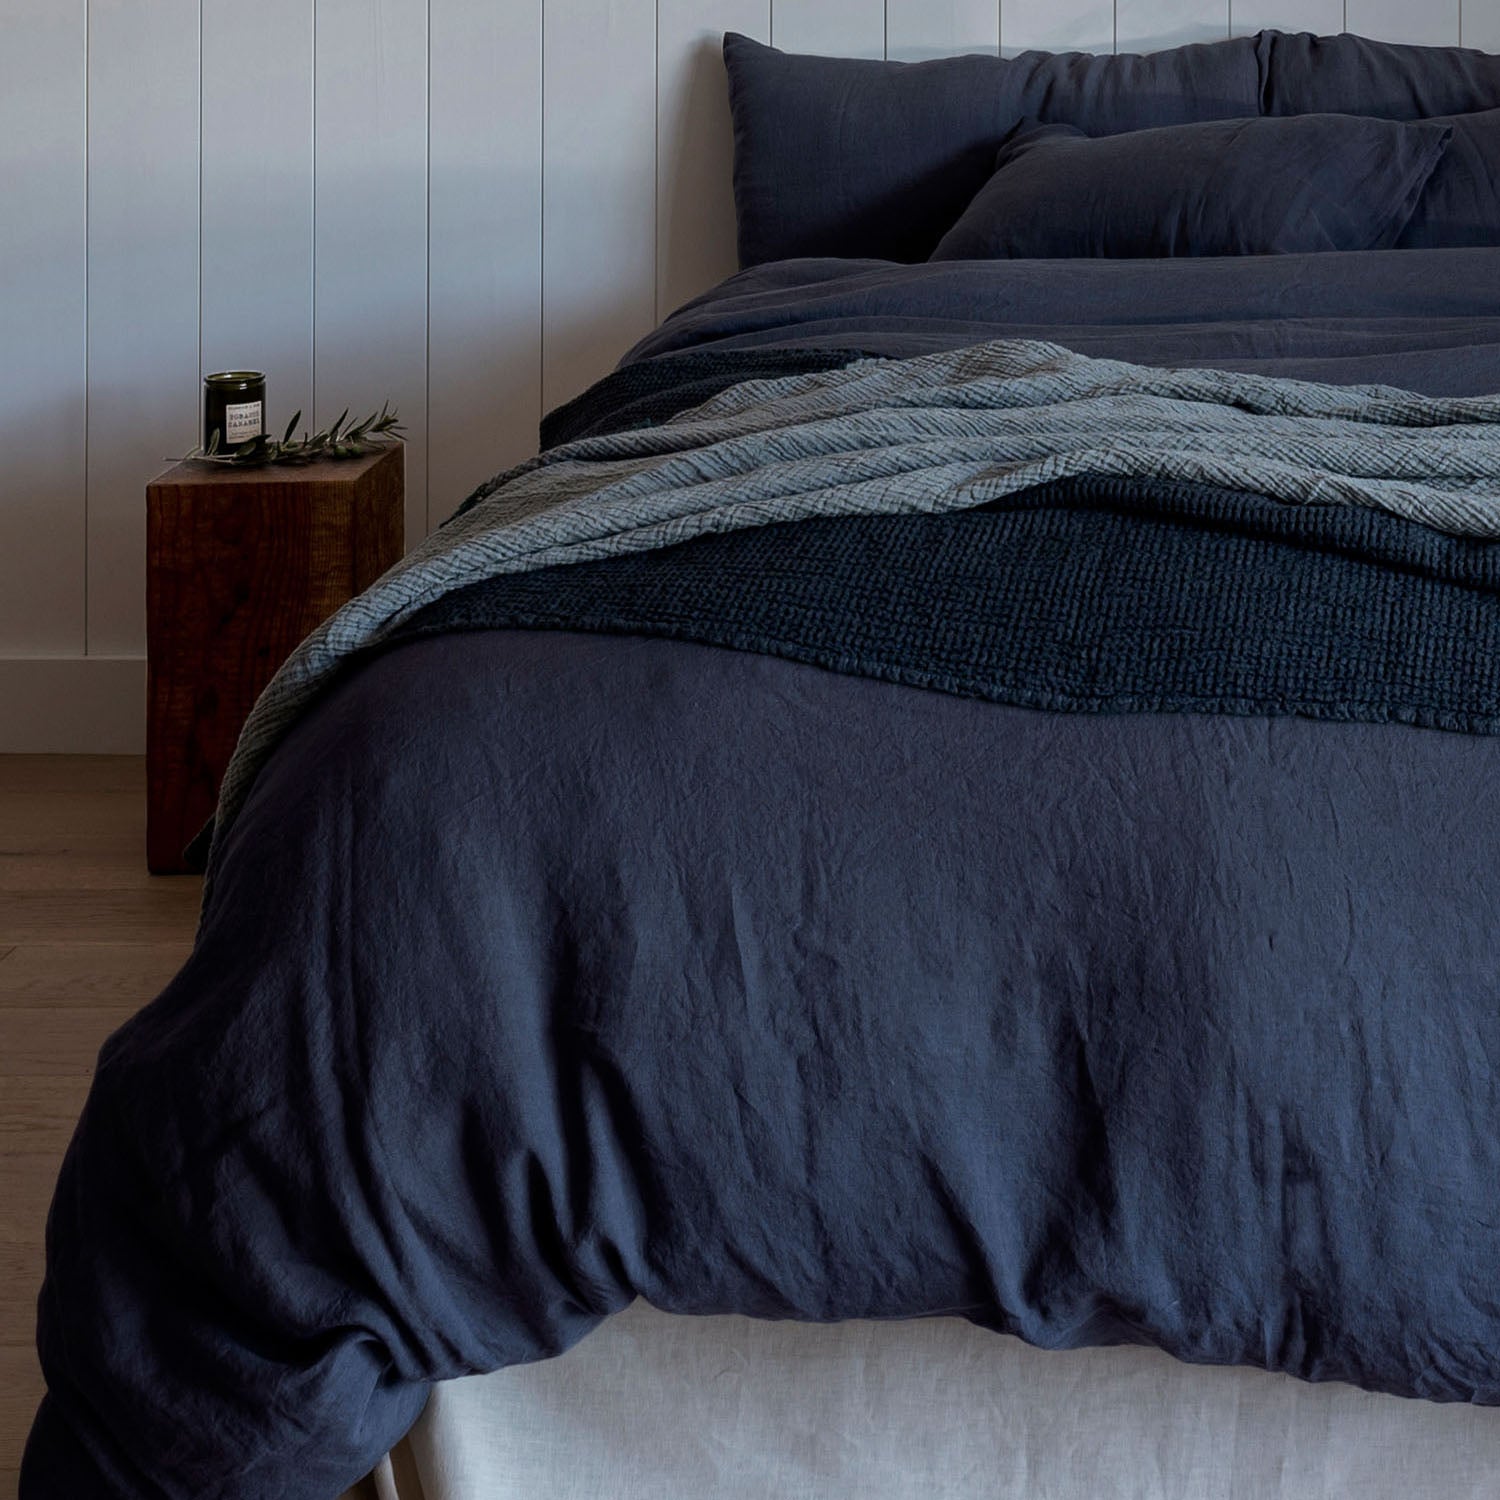 bed linen duvet cover bedding midnight blue siderbar-key-image